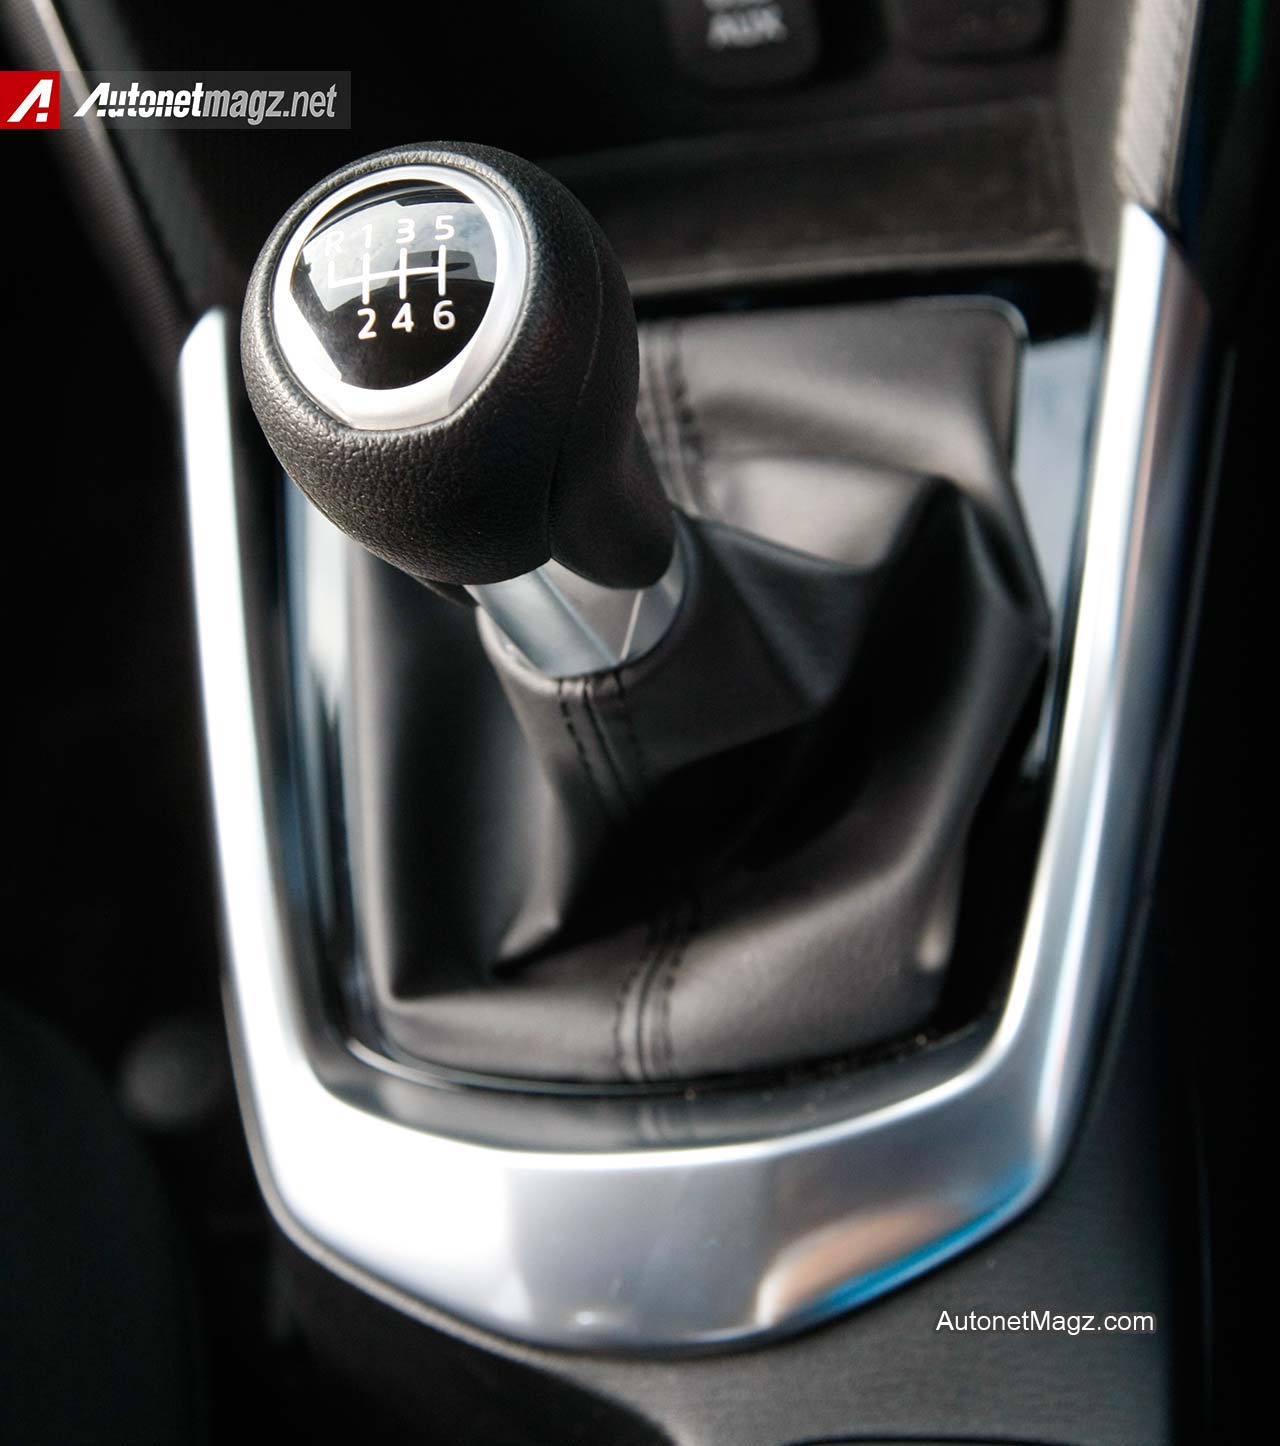 Mazda, Transmisi-Manual-Mazda2-SkyActiv: Test Drive Mazda2 SkyActiv Transmisi Manual di Sirkuit Sentul